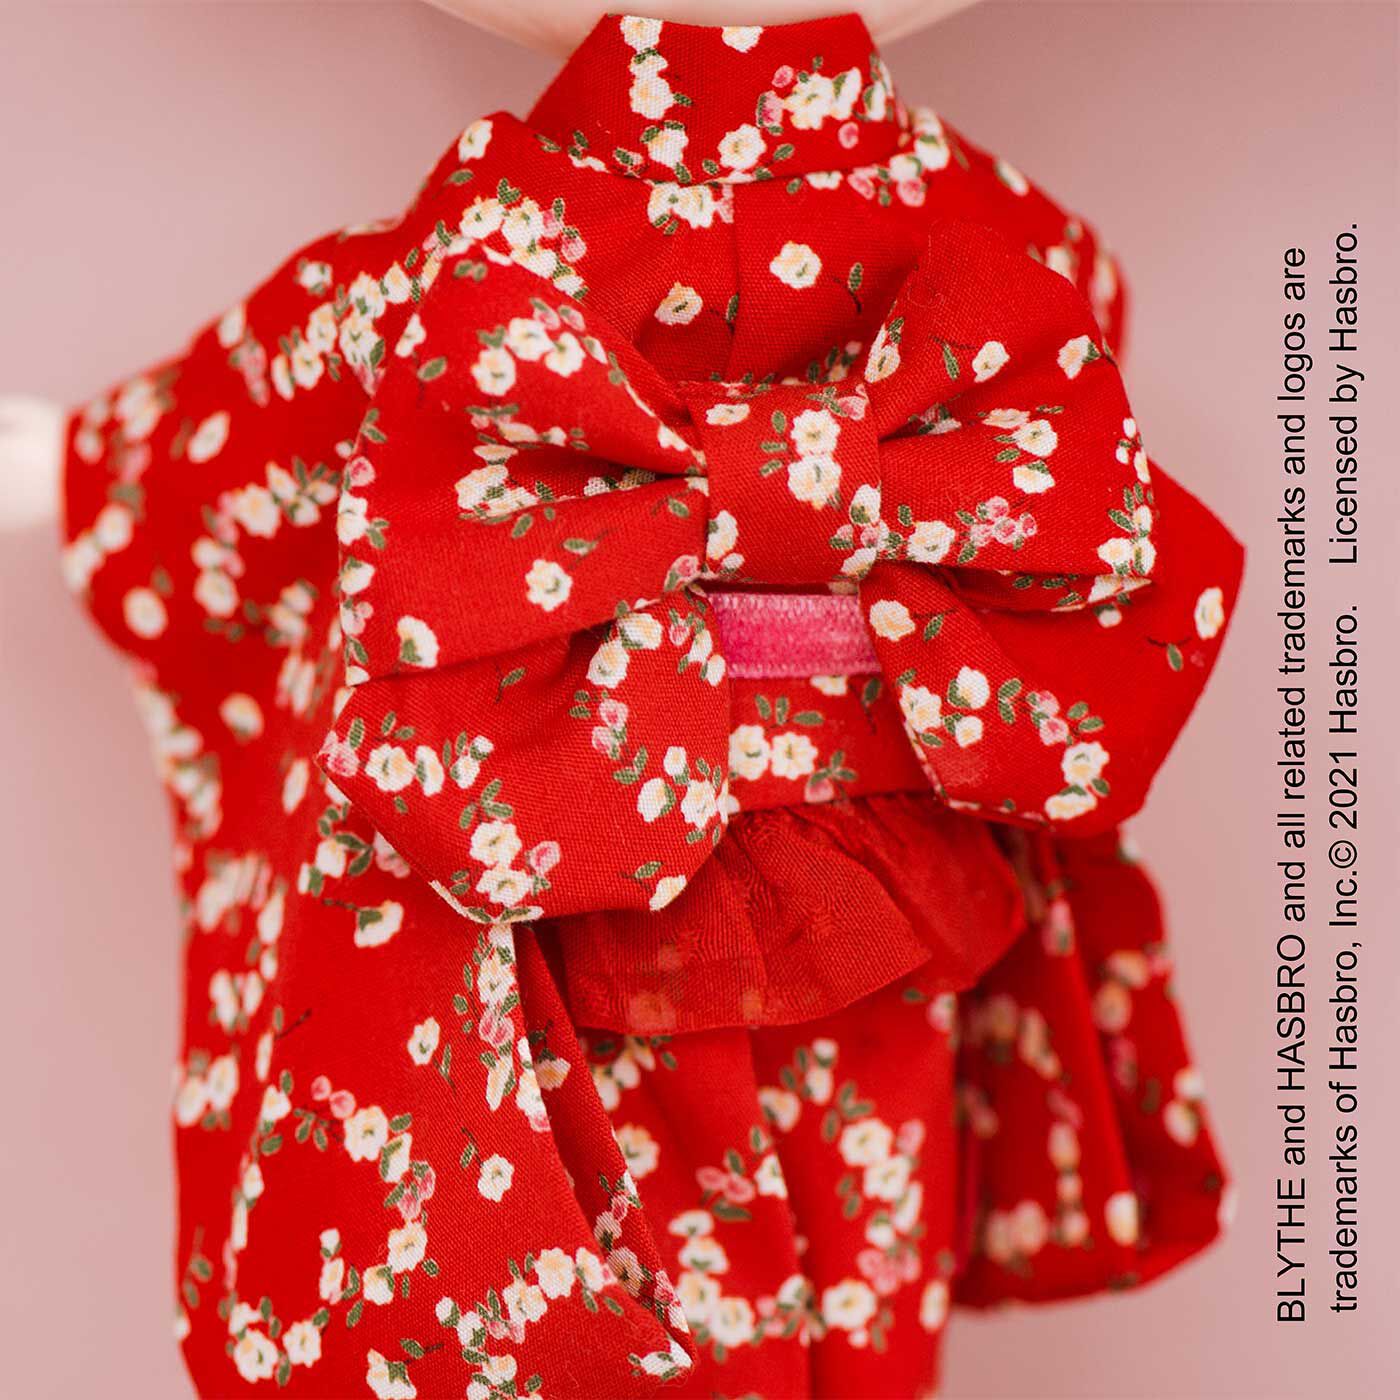 クチュリエ|真っ赤なフリルがロマンティック chimachocoさんのドール用着物のキット